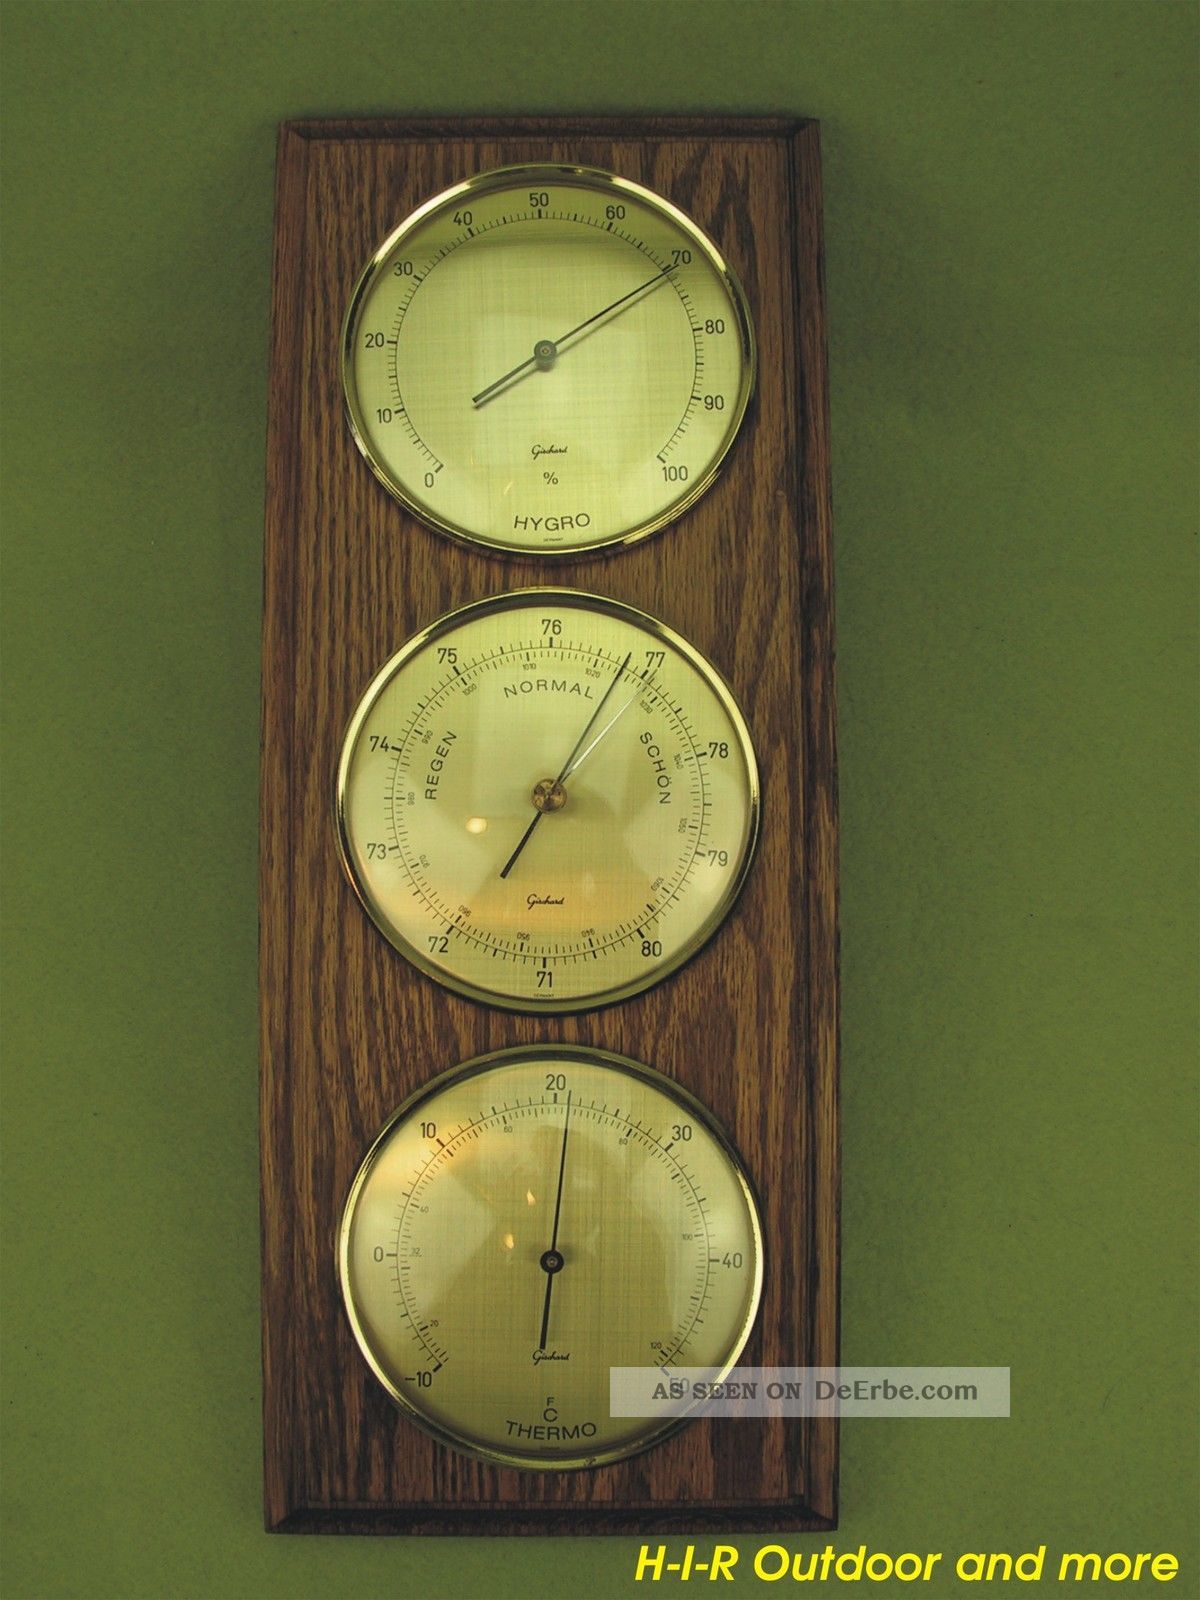 Seltenes Gischard Barometer Thermometer Hygrometer Wetterstation Vintage Rar Wettergeräte Bild